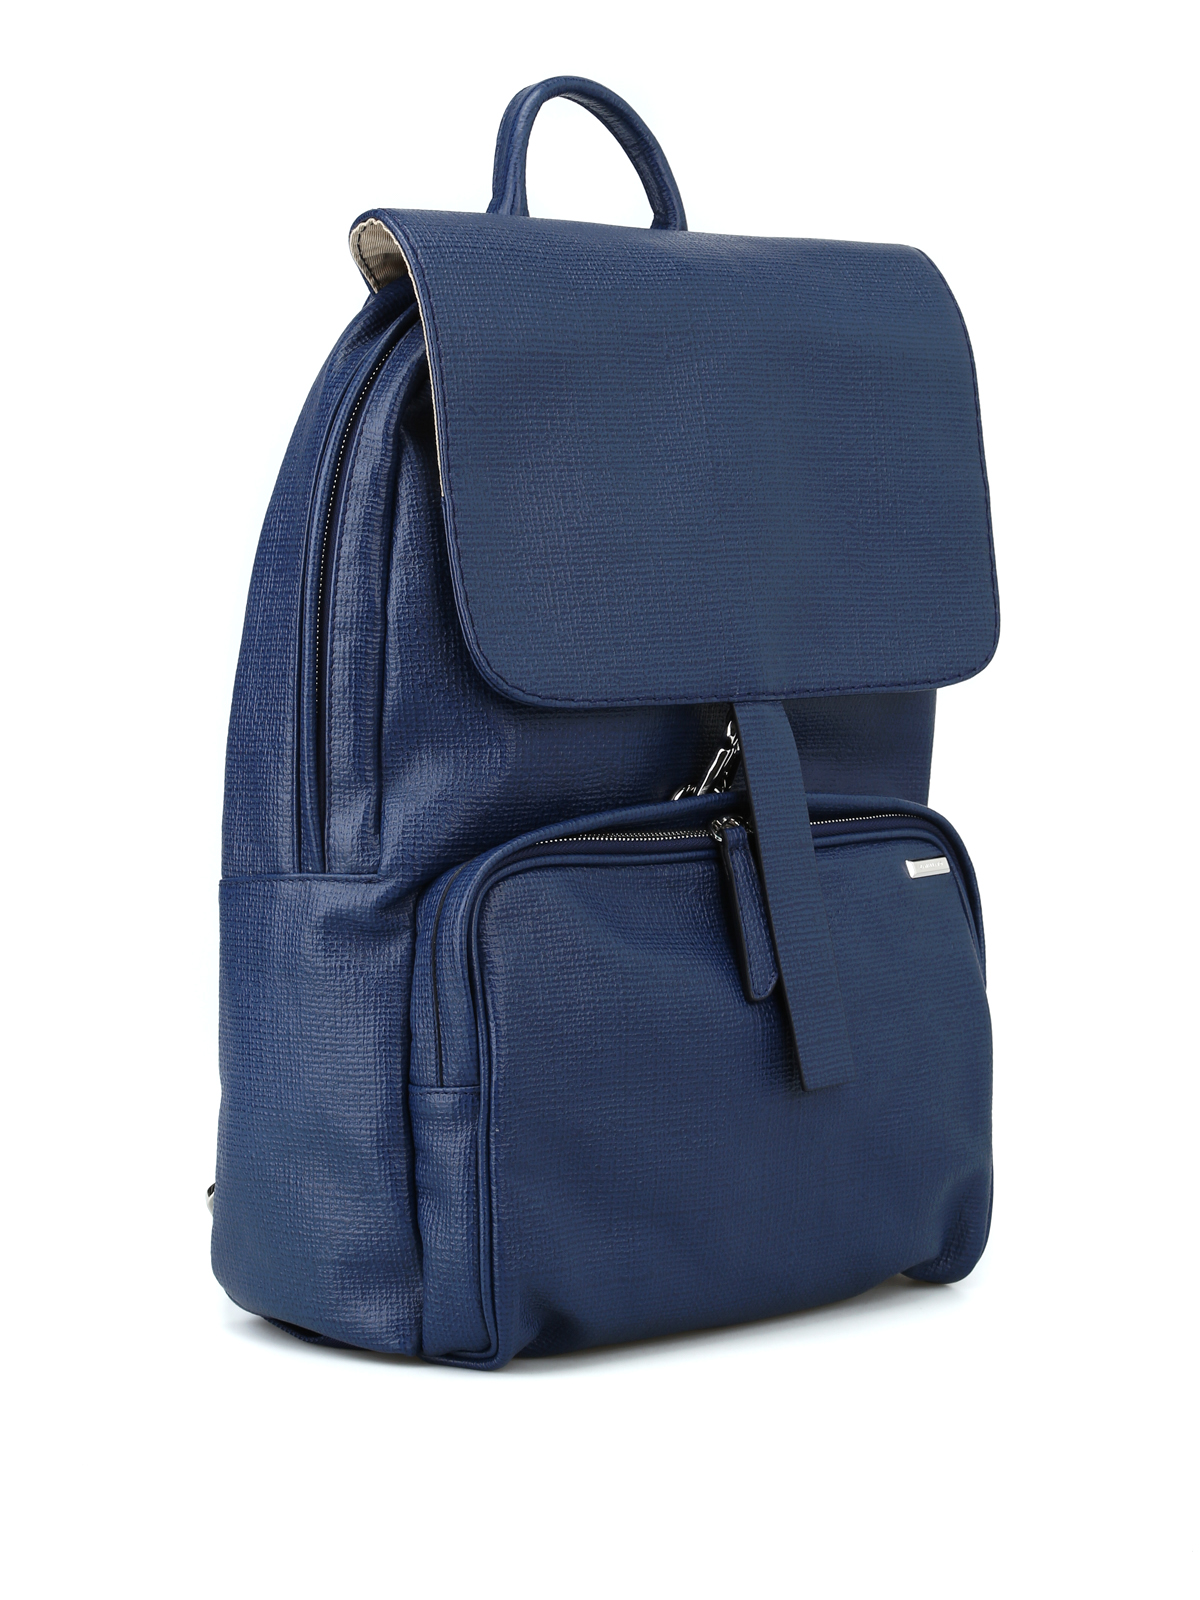 Backpacks Zanellato - Ildo Curturo blue leather backpack 